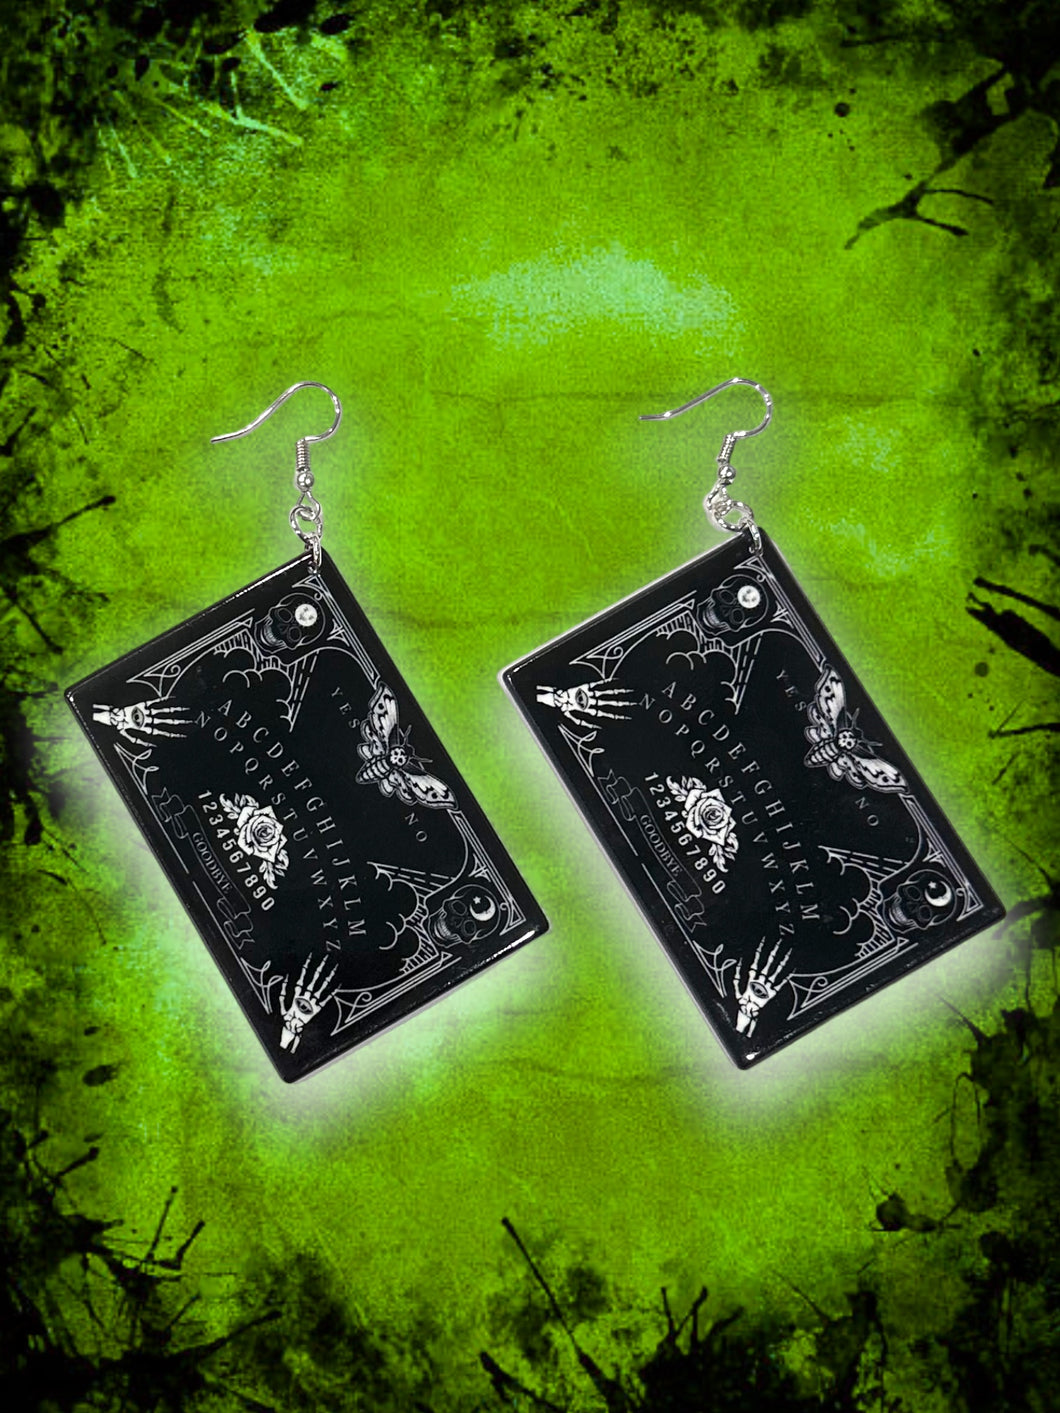 Deathmoth Ouija earrings